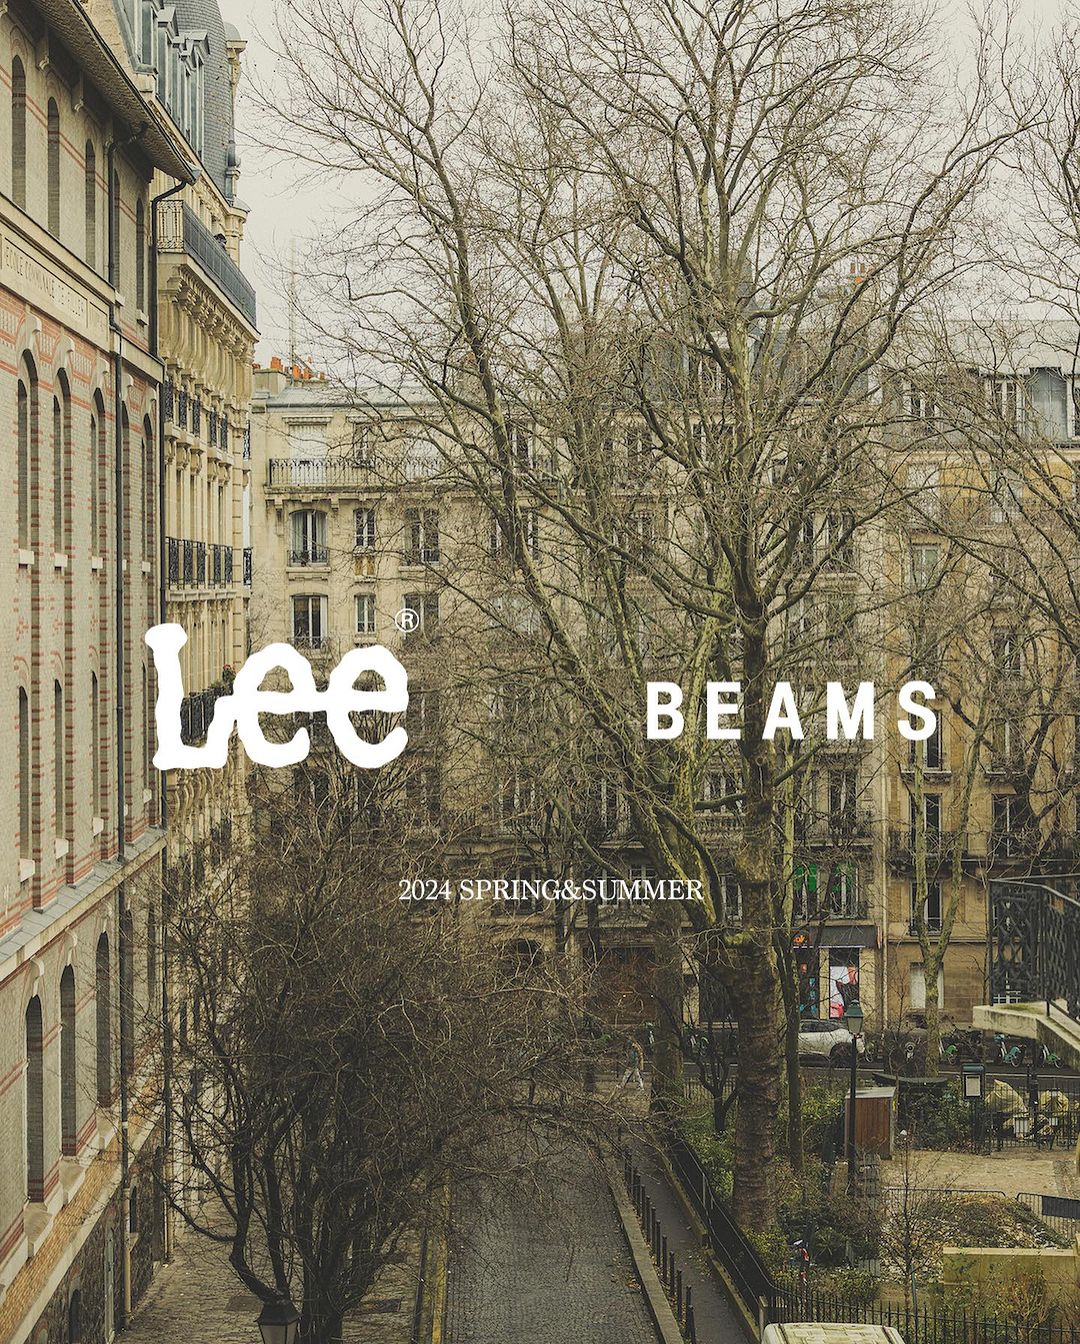 Lee × BEAMS クラッシュデニム 第2弾が2024年 3/16 発売 (リー ビームス)